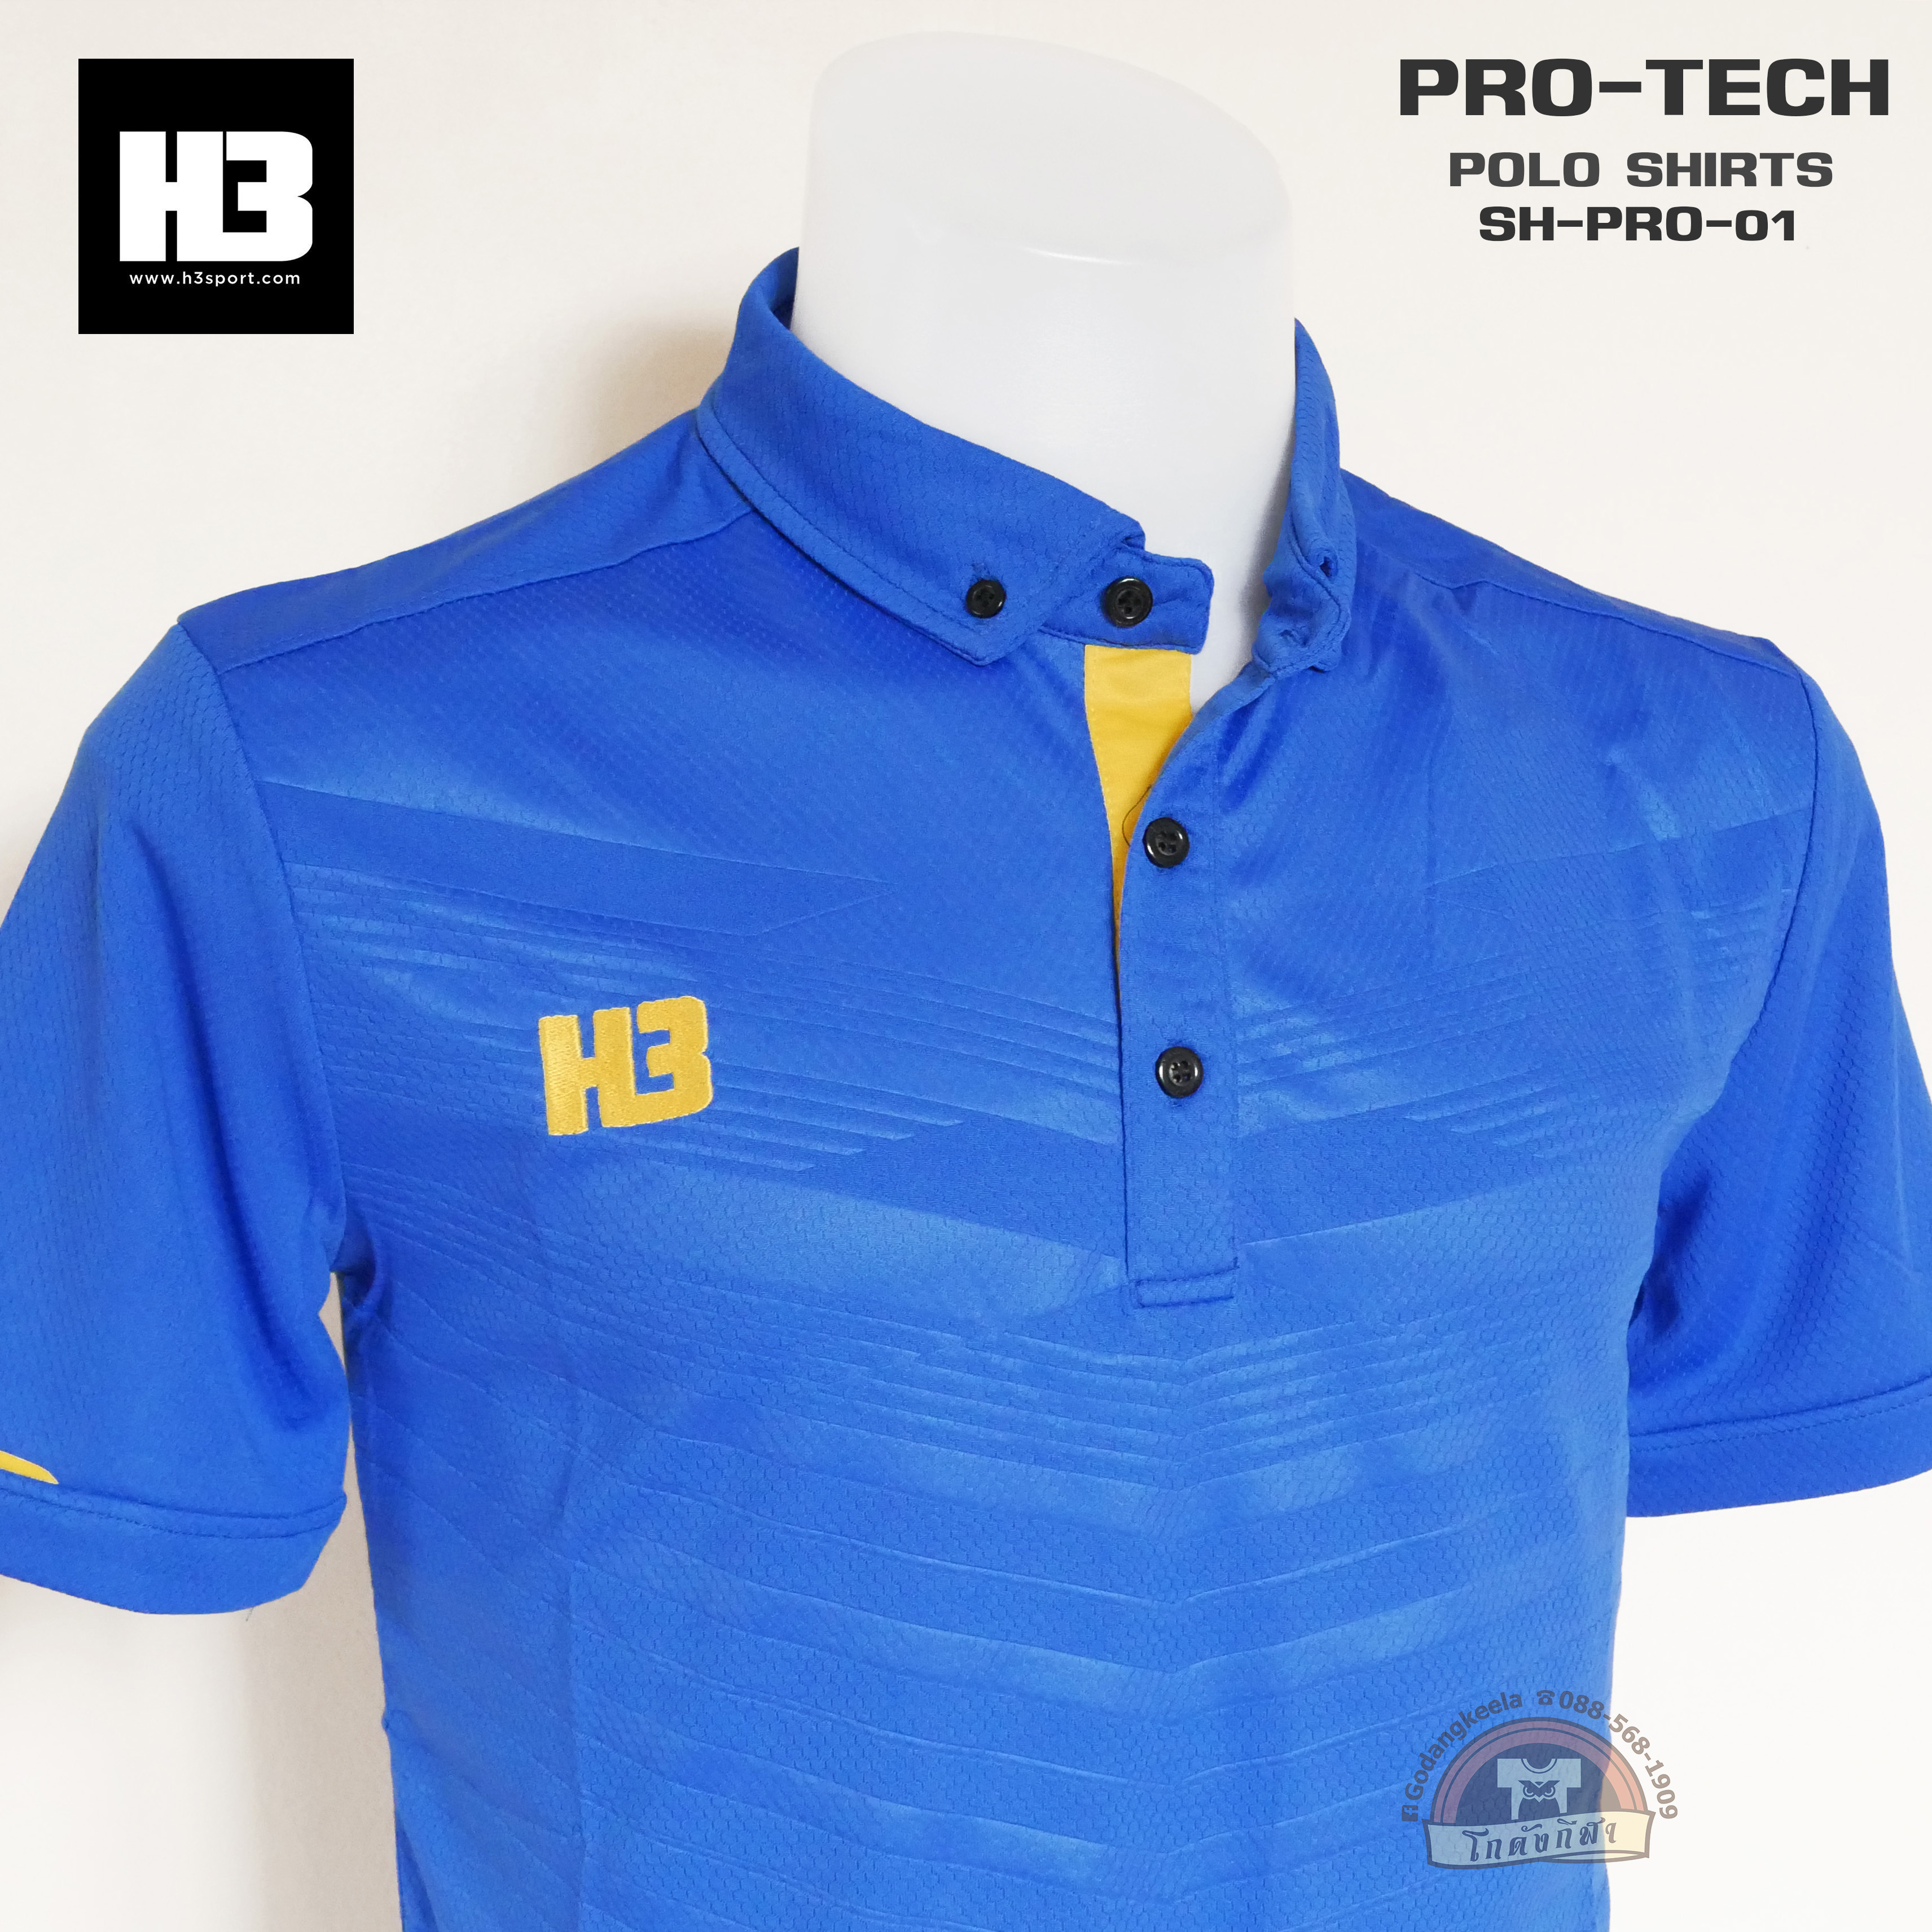 H3 เสื้อโปโล PRO TECH รุ่น SH PRO01 ของแท้ 100%